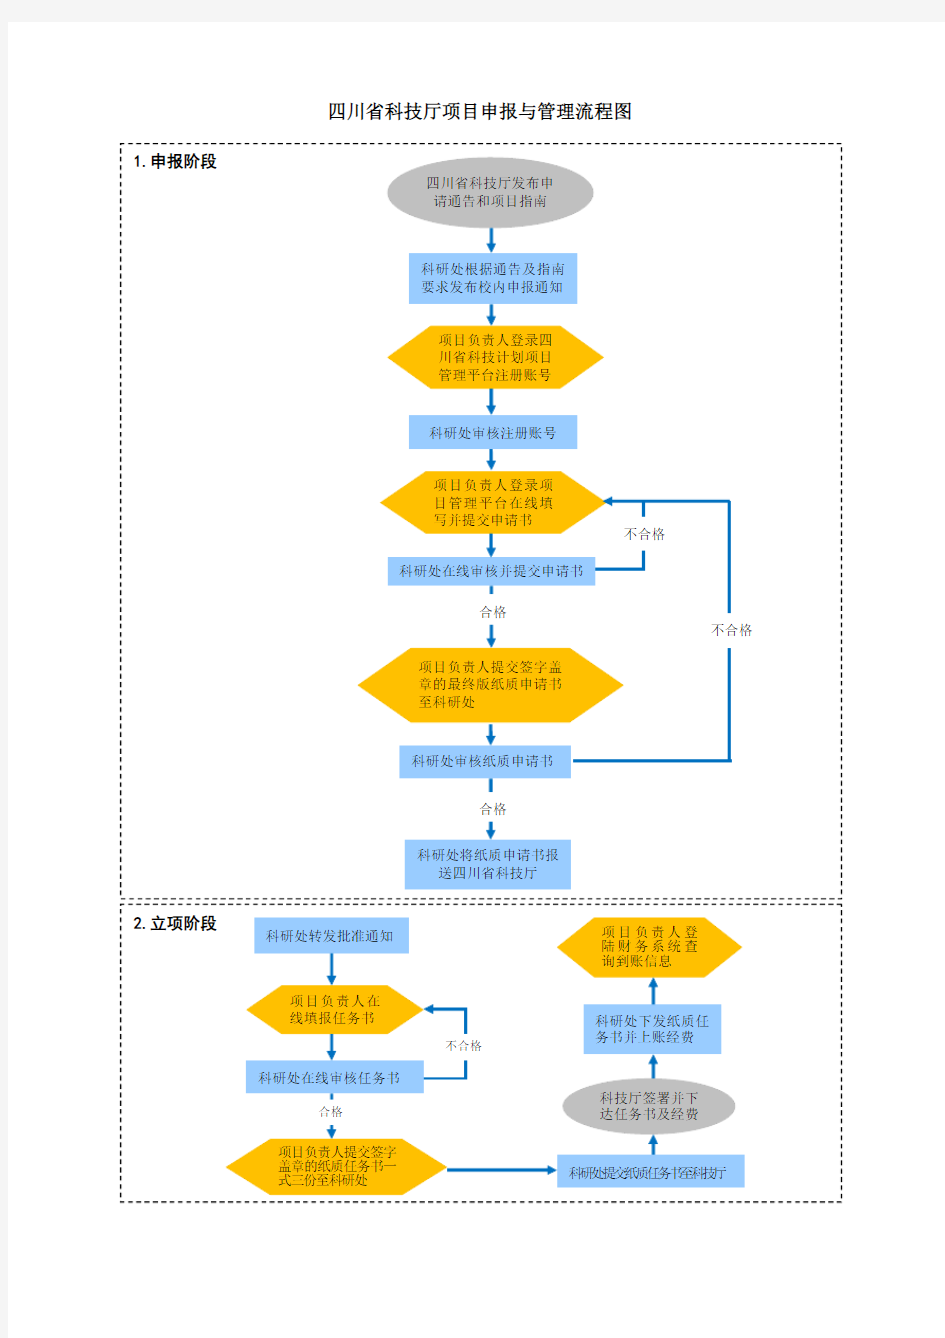 四川省科技厅项目申报与管理流程图